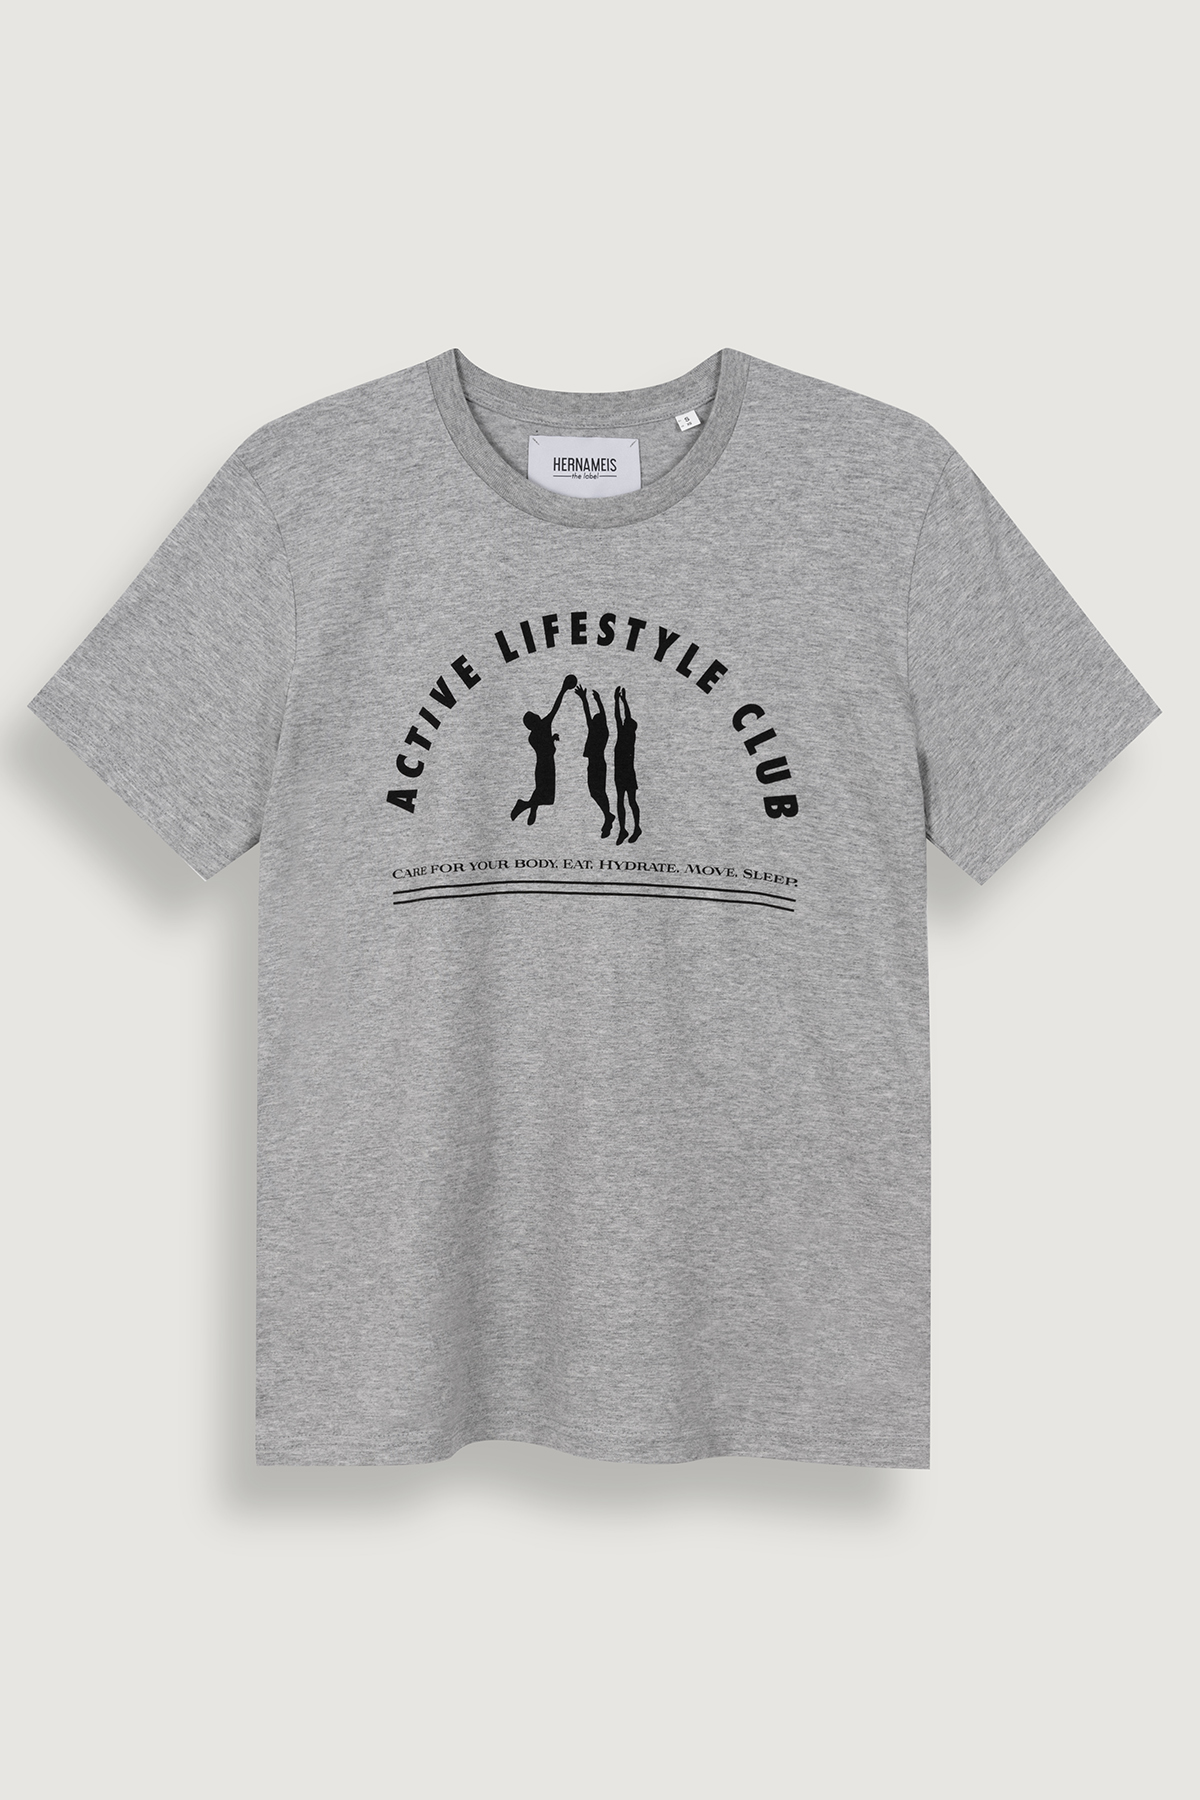 Dooleys Likör T-Shirt in schwarz mit Logo Größe XL tshirt Shirt  Neu & OVP